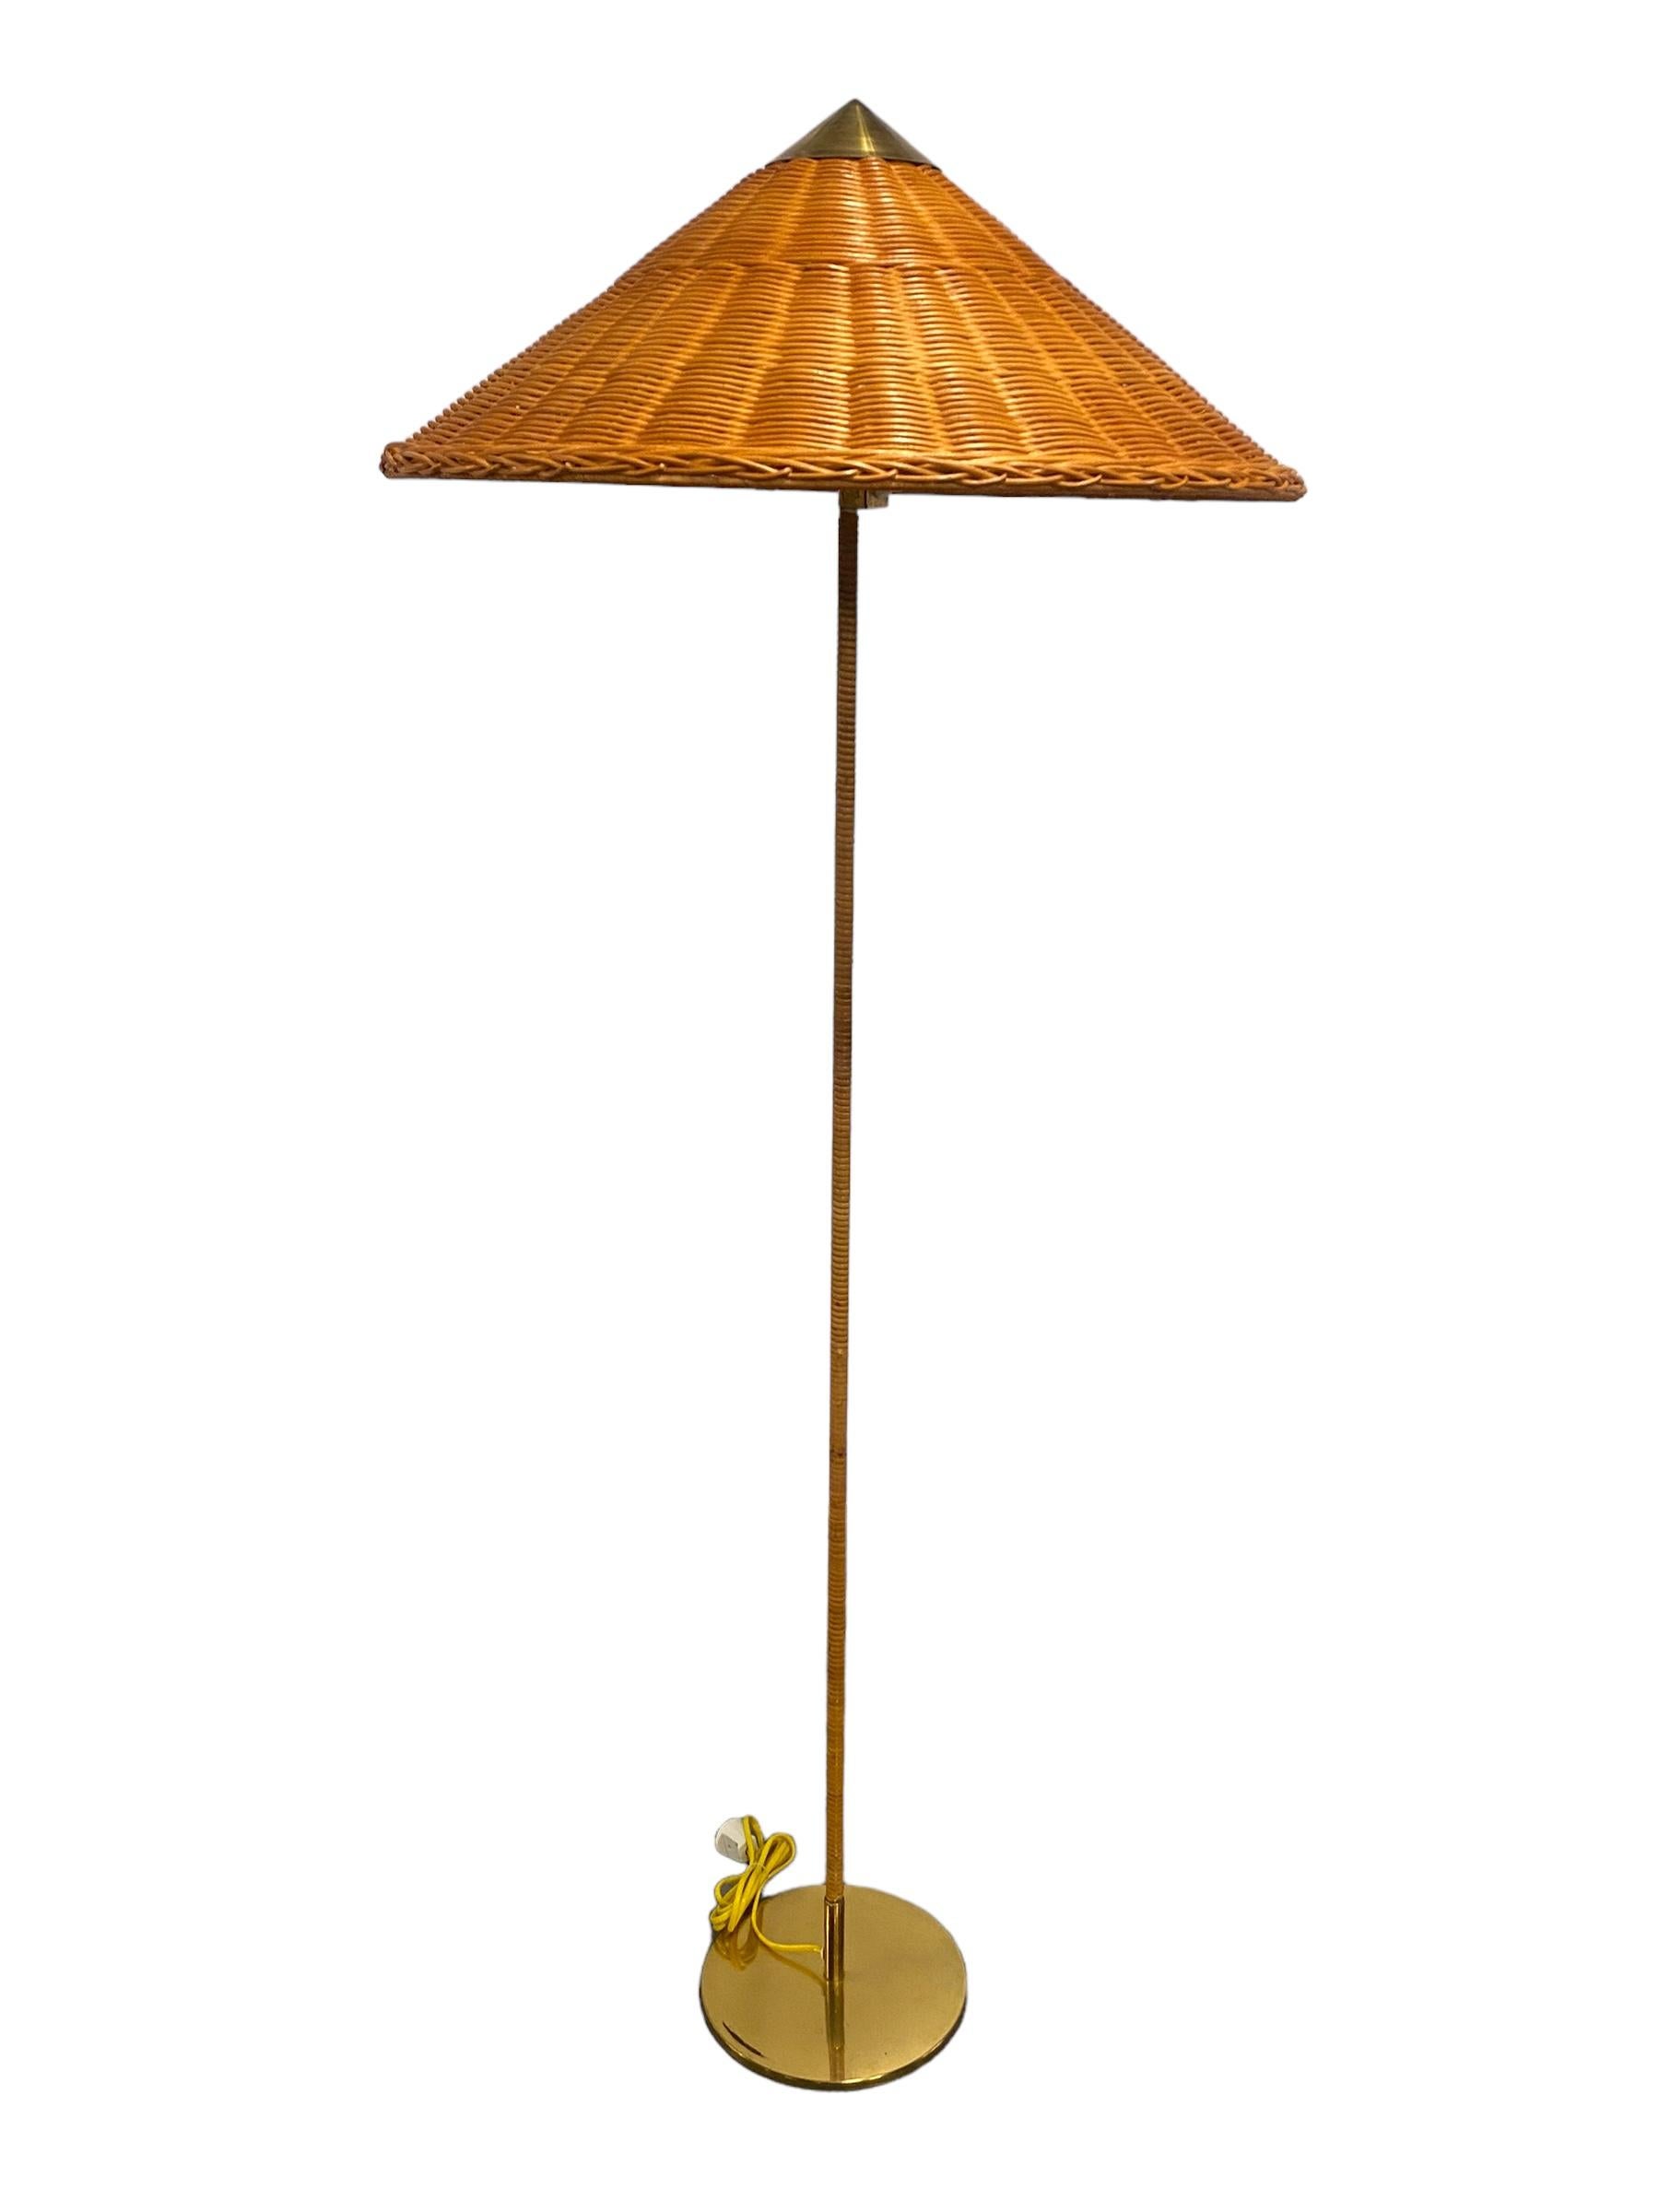 Diese ikonische Stehleuchte wurde ursprünglich von Paavo Tynell in den späten 1930er Jahren entworfen und während der goldenen Ära des Tynell-Designs in der zweiten Hälfte der 1940er Jahre weiterentwickelt. Bei dieser exquisiten Lampe sind noch alle